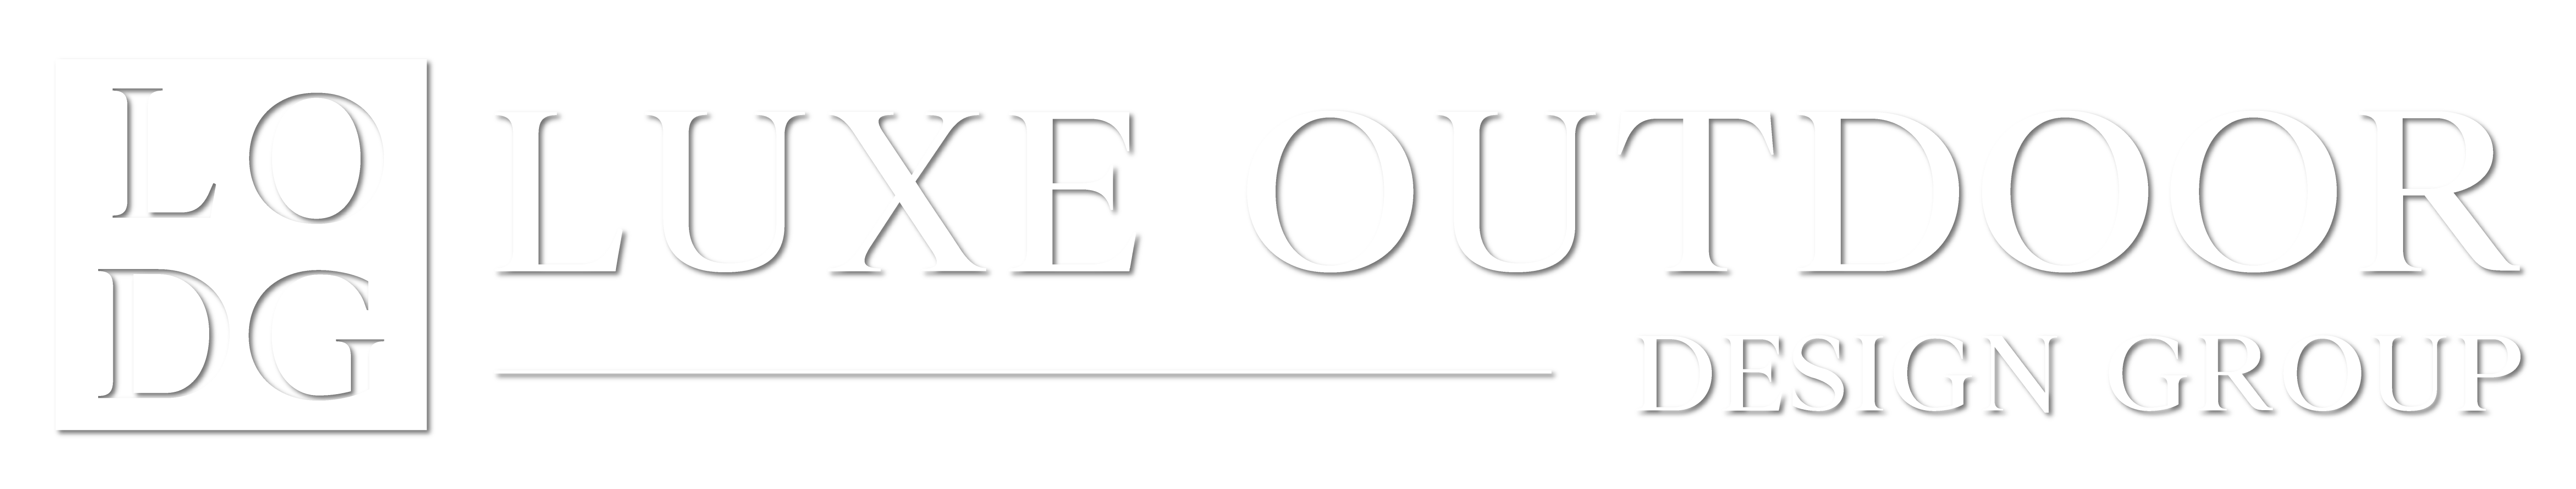 Luxe Outdoor Design Group Logo